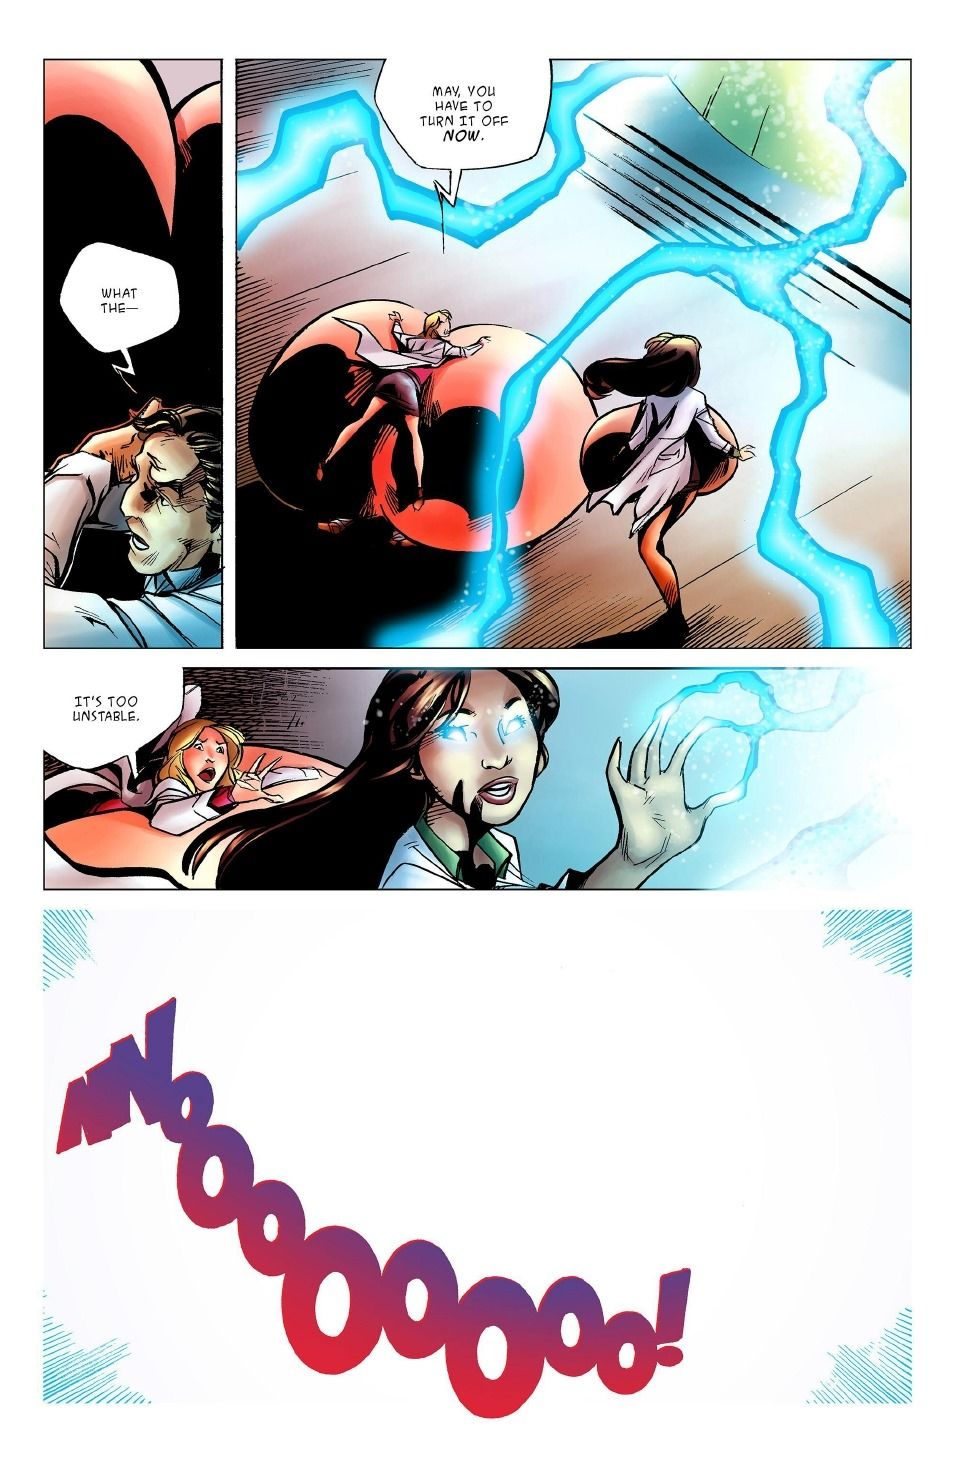 бот комиксы коллайдер Второй page 1